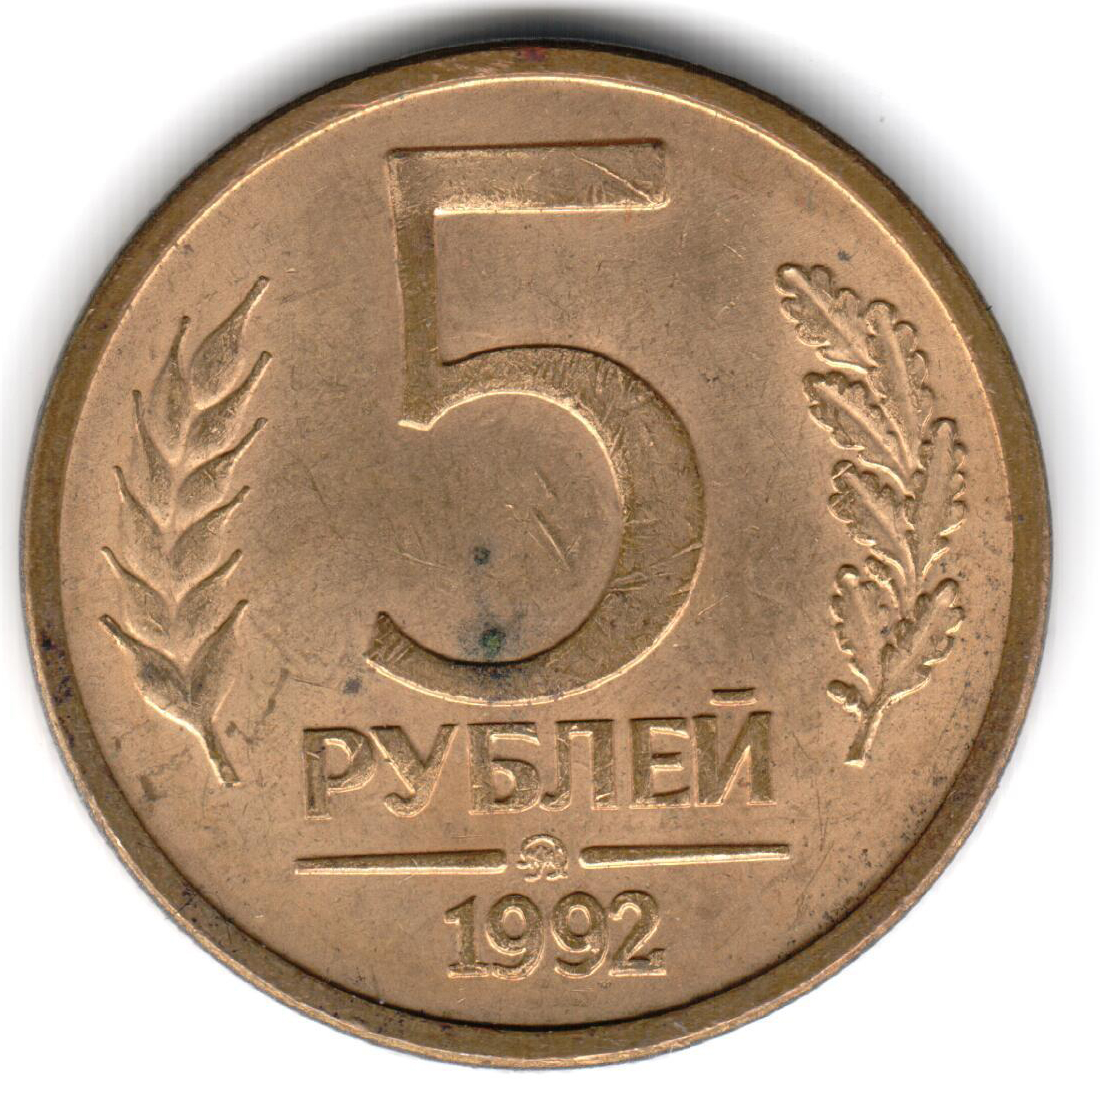 5 рублей хватит. 5 Рублей 1992 года. Монета 5 рублей 1992. Монеты СССР 1992. 5 Руб 1992 года.